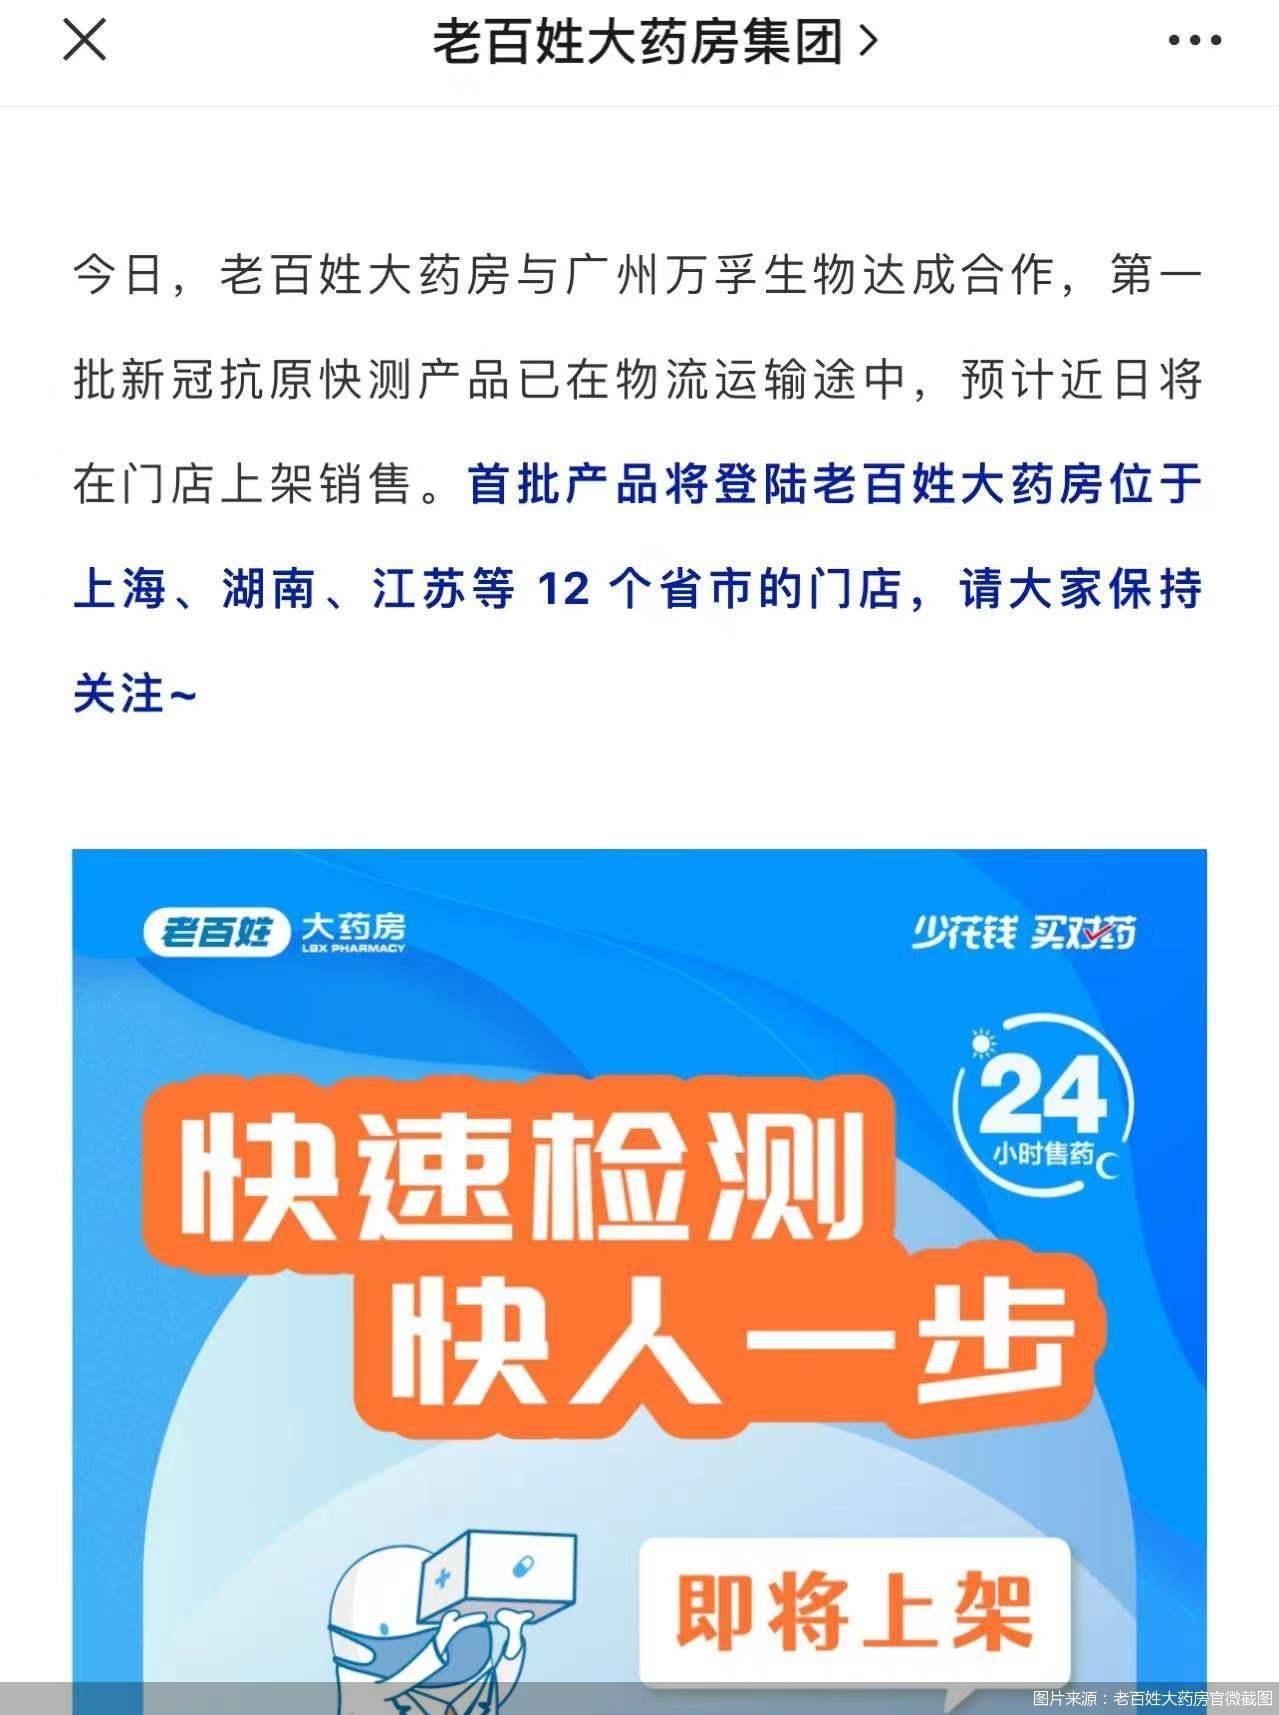 上海|老百姓大药房首批新冠自测产品即将上线，覆盖上海、湖南、江苏等 12 个省市门店